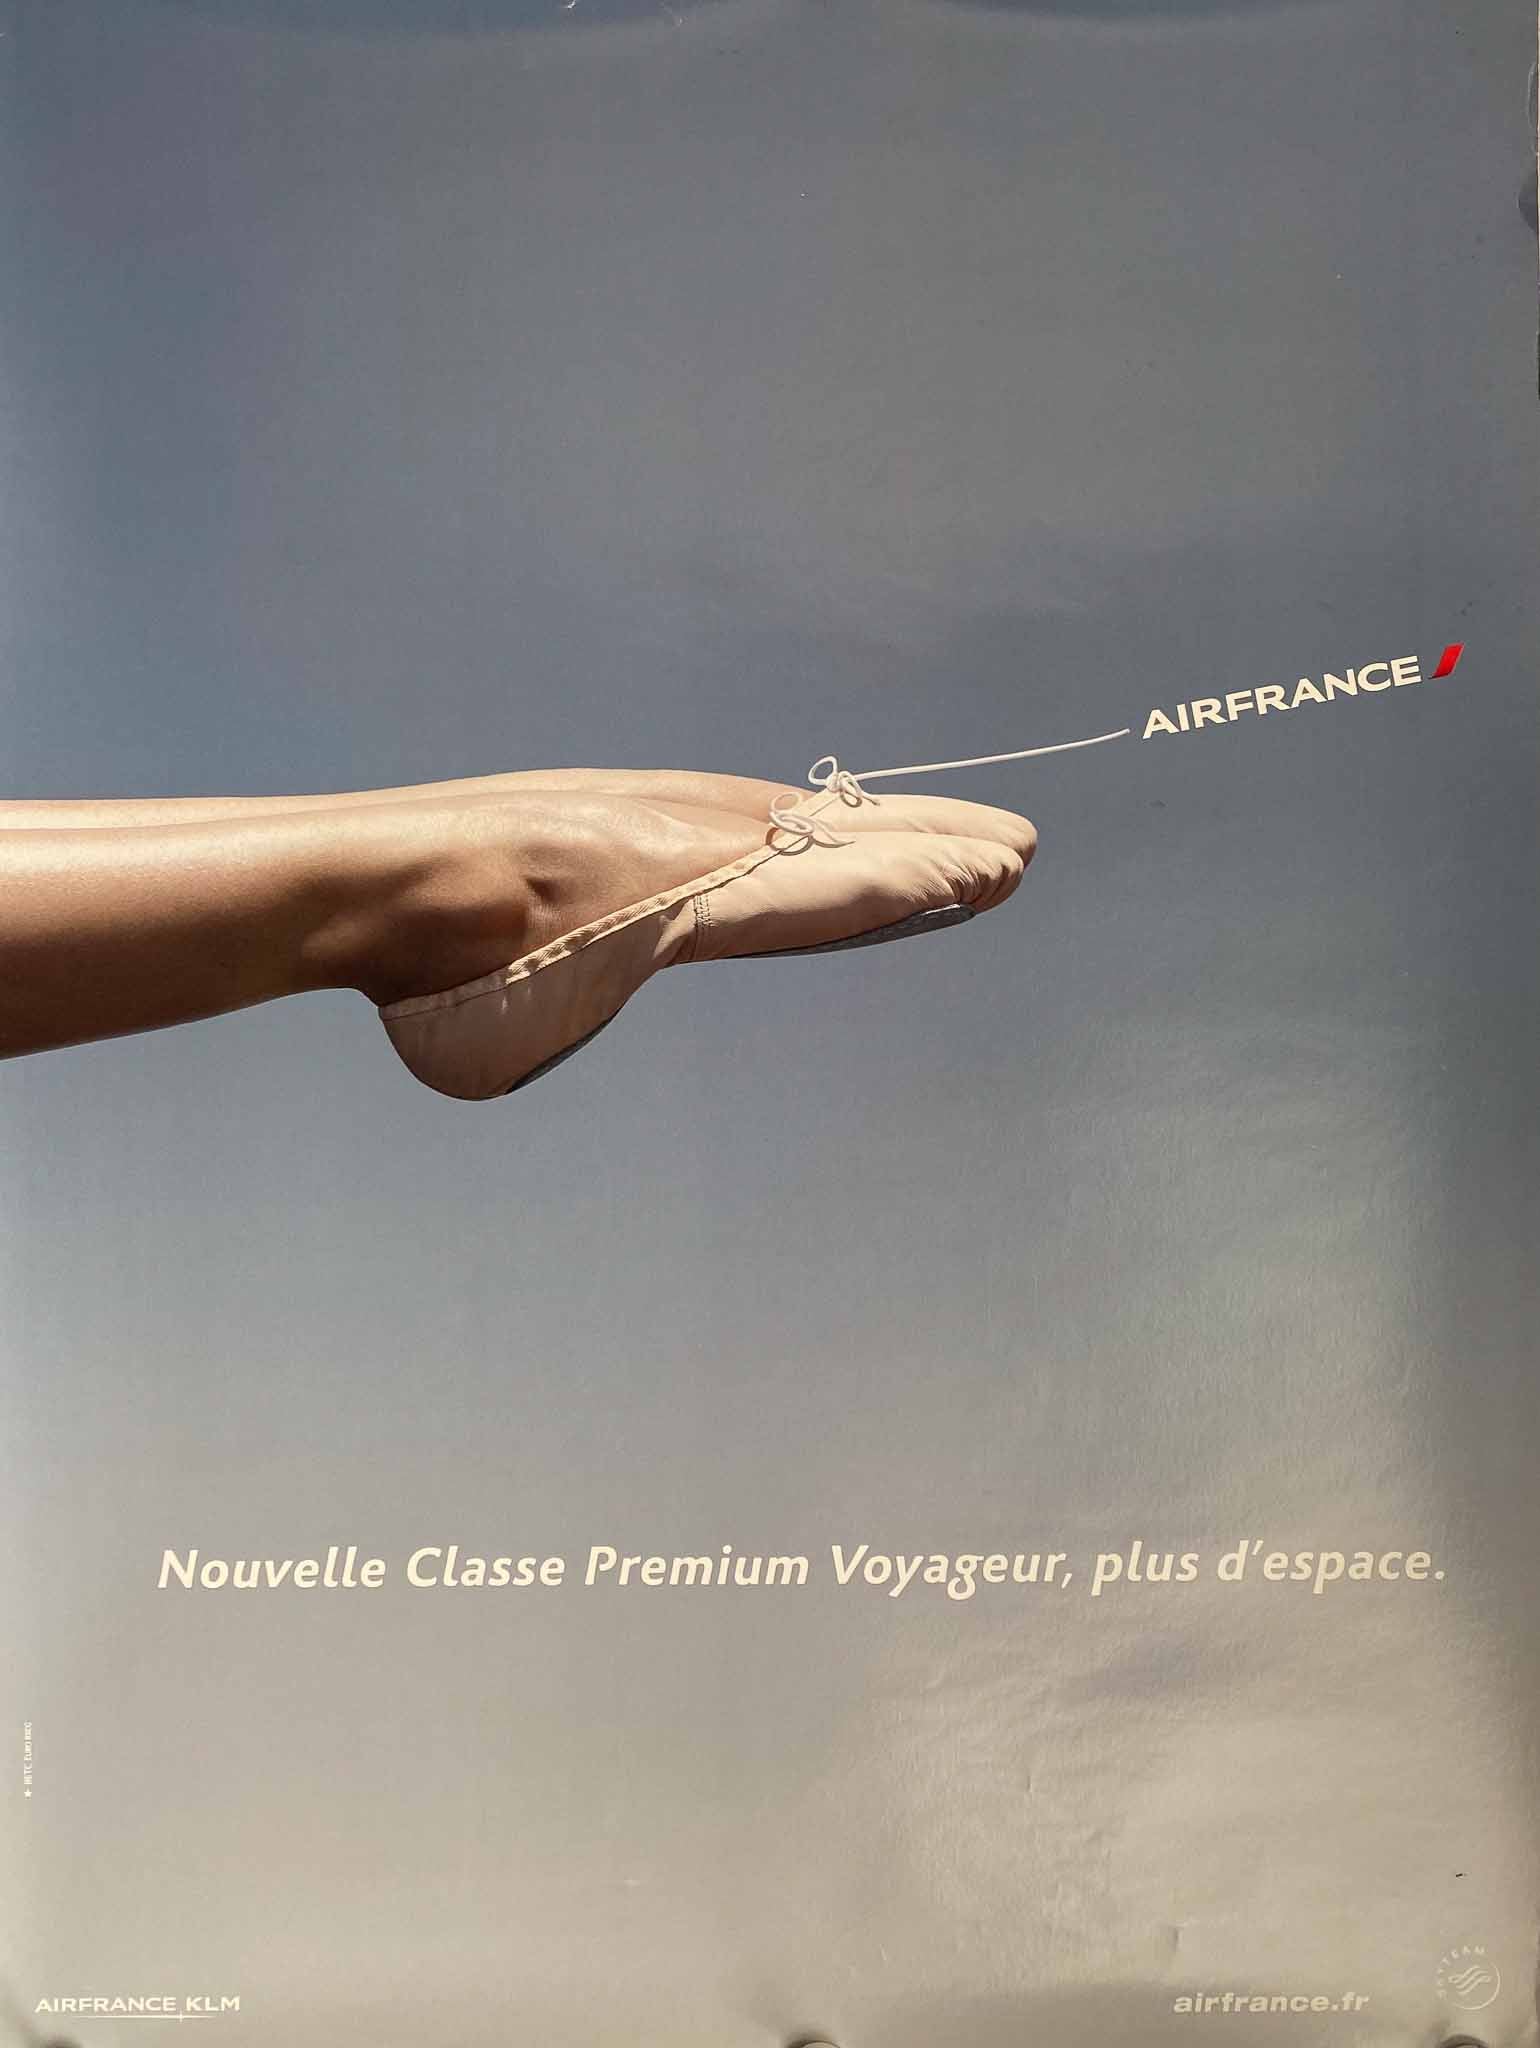 Affiche Air France KLM "France is in the Air" Classes Affaires. Le Confort - Sophia Sanchez & Mauro Mongiello, 2014